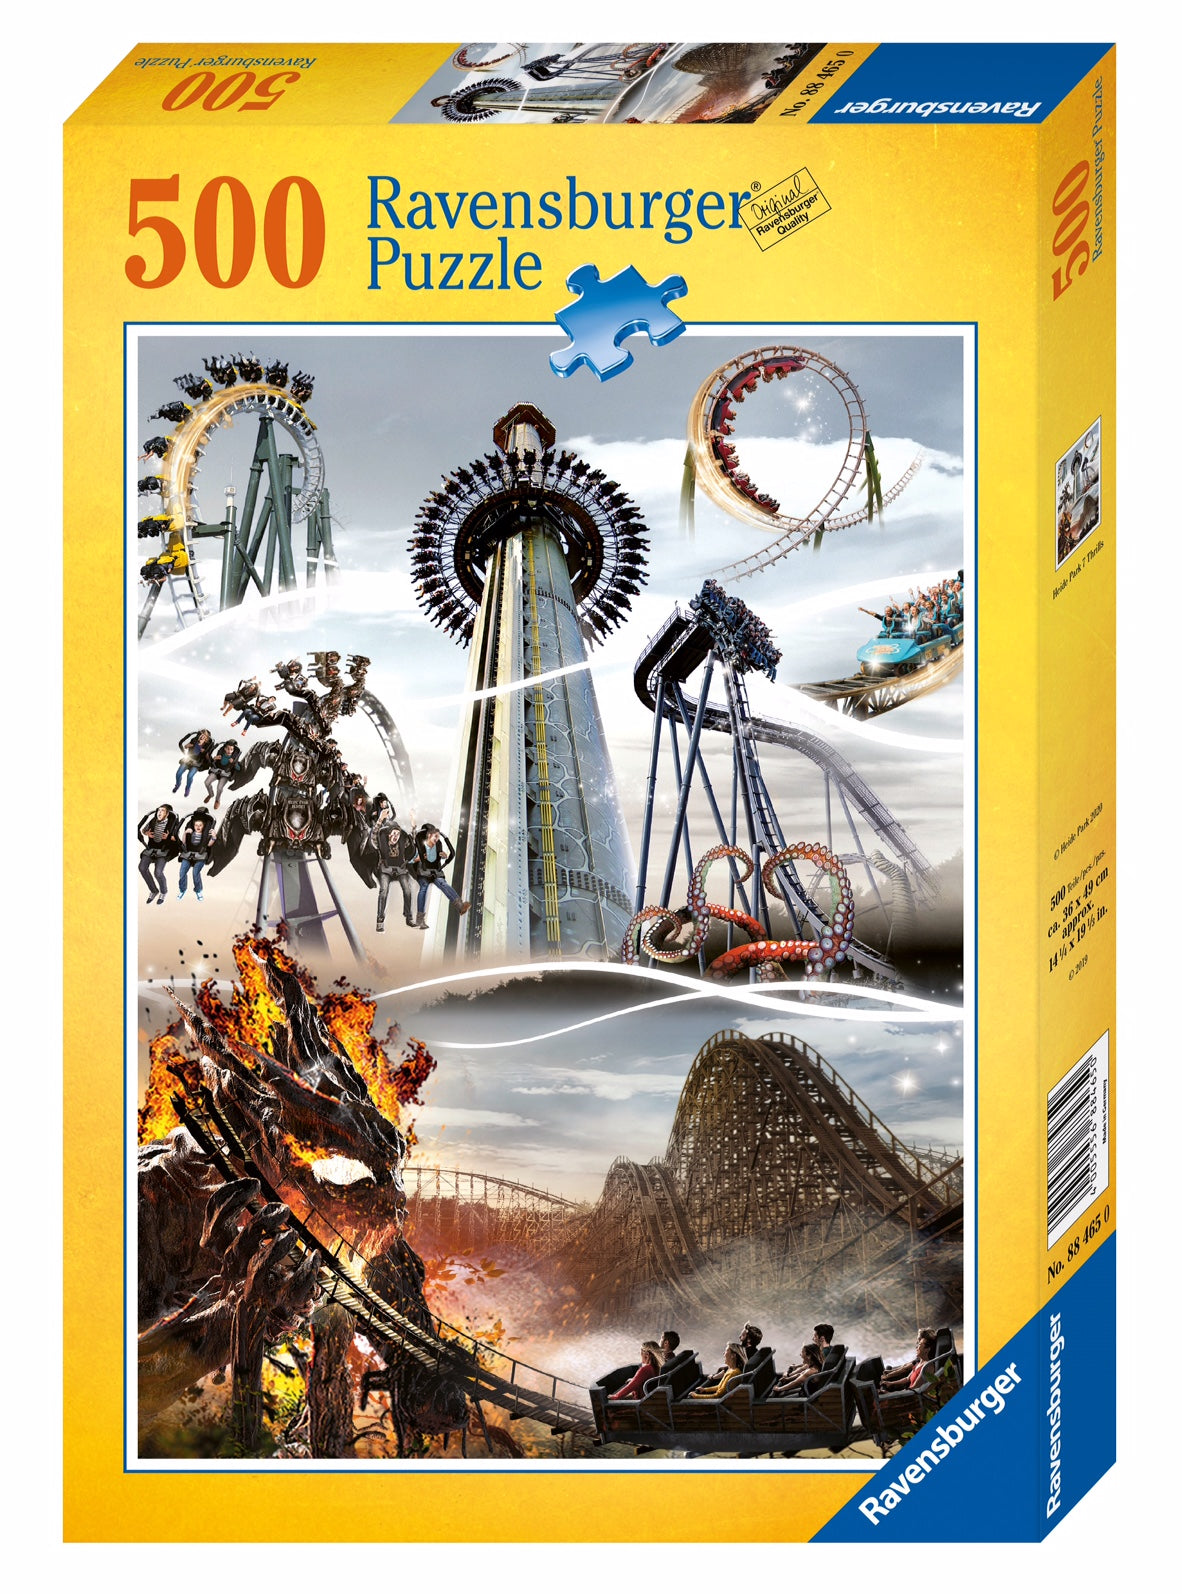 Ravensburger Puzzle "7 Thrills" 500 Teile